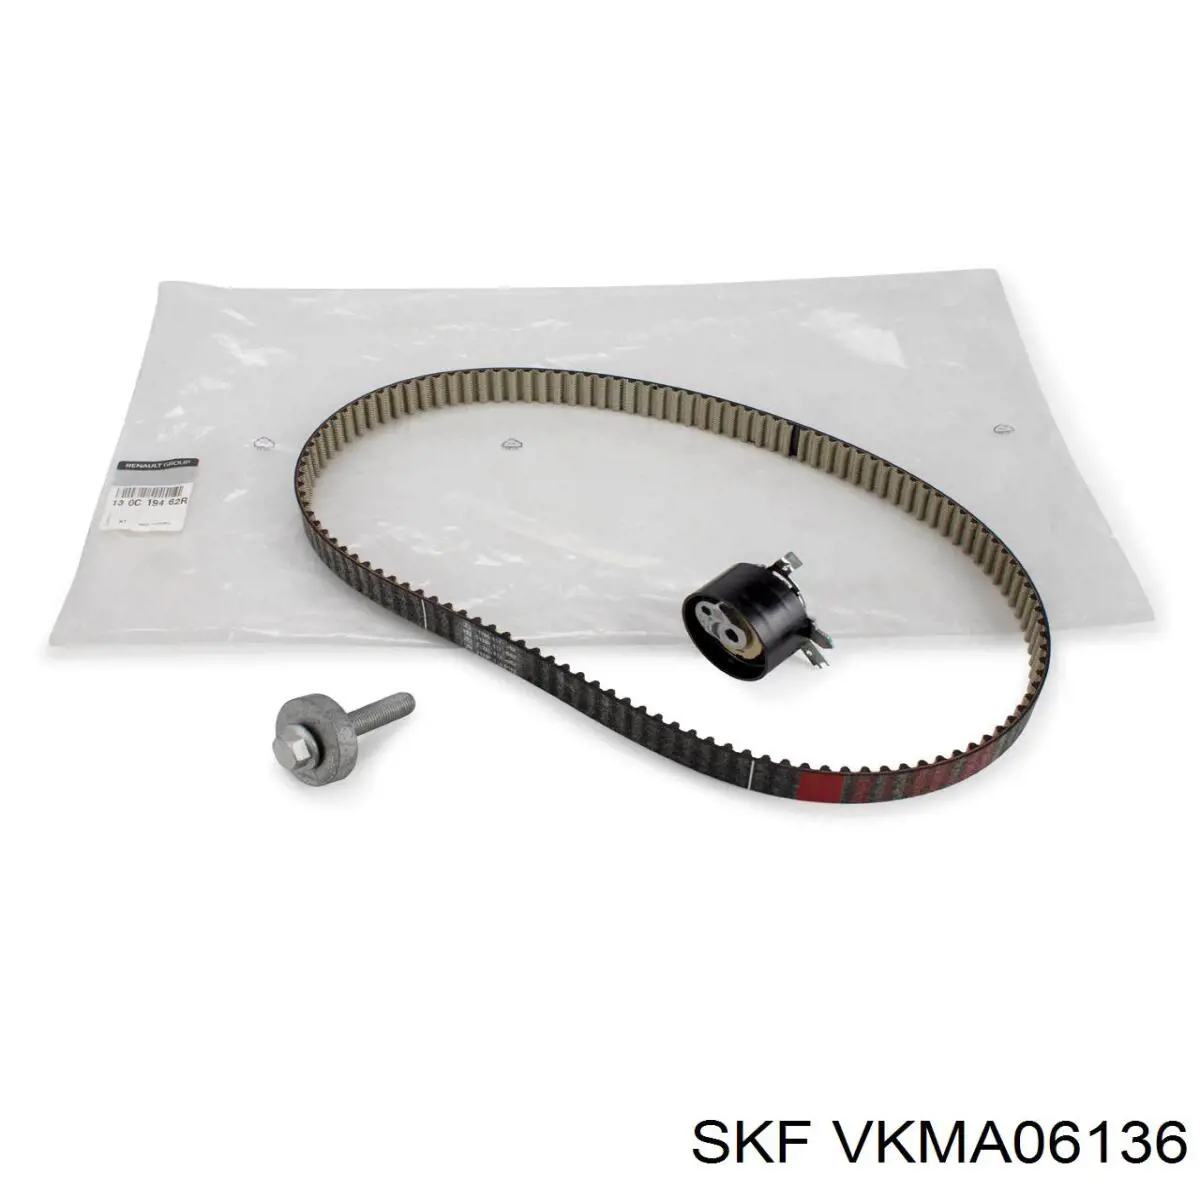 VKMA 06136 SKF kit de correa de distribución